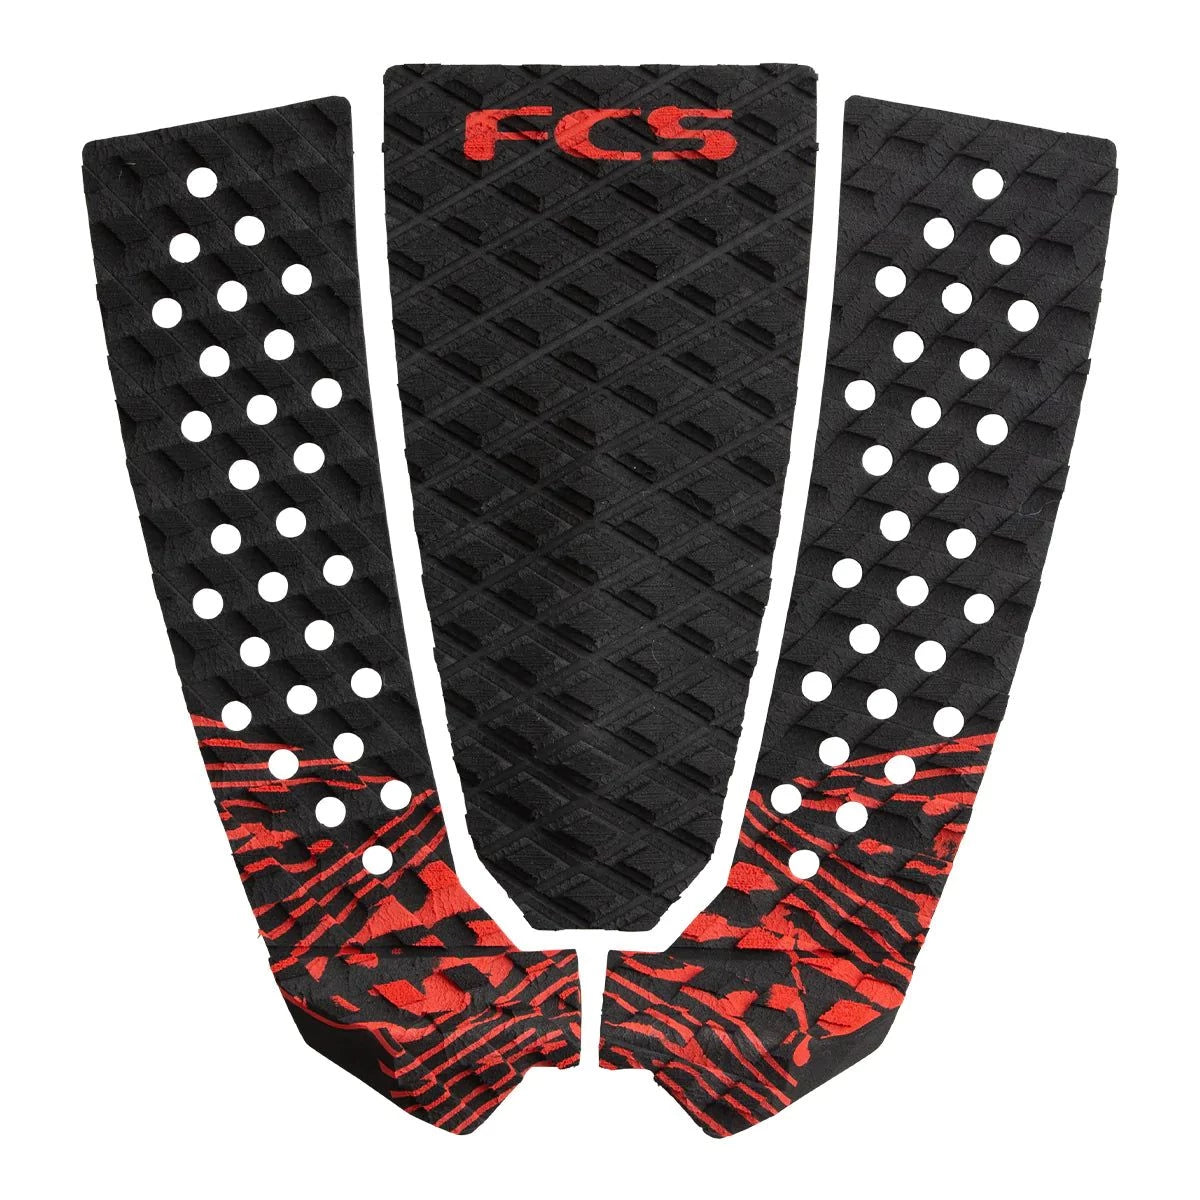 FCS Filipe Toledo Traction-FCS-fcs,fcs fins,FCS II,filipe toledo,fins,gear,surfboard,traction